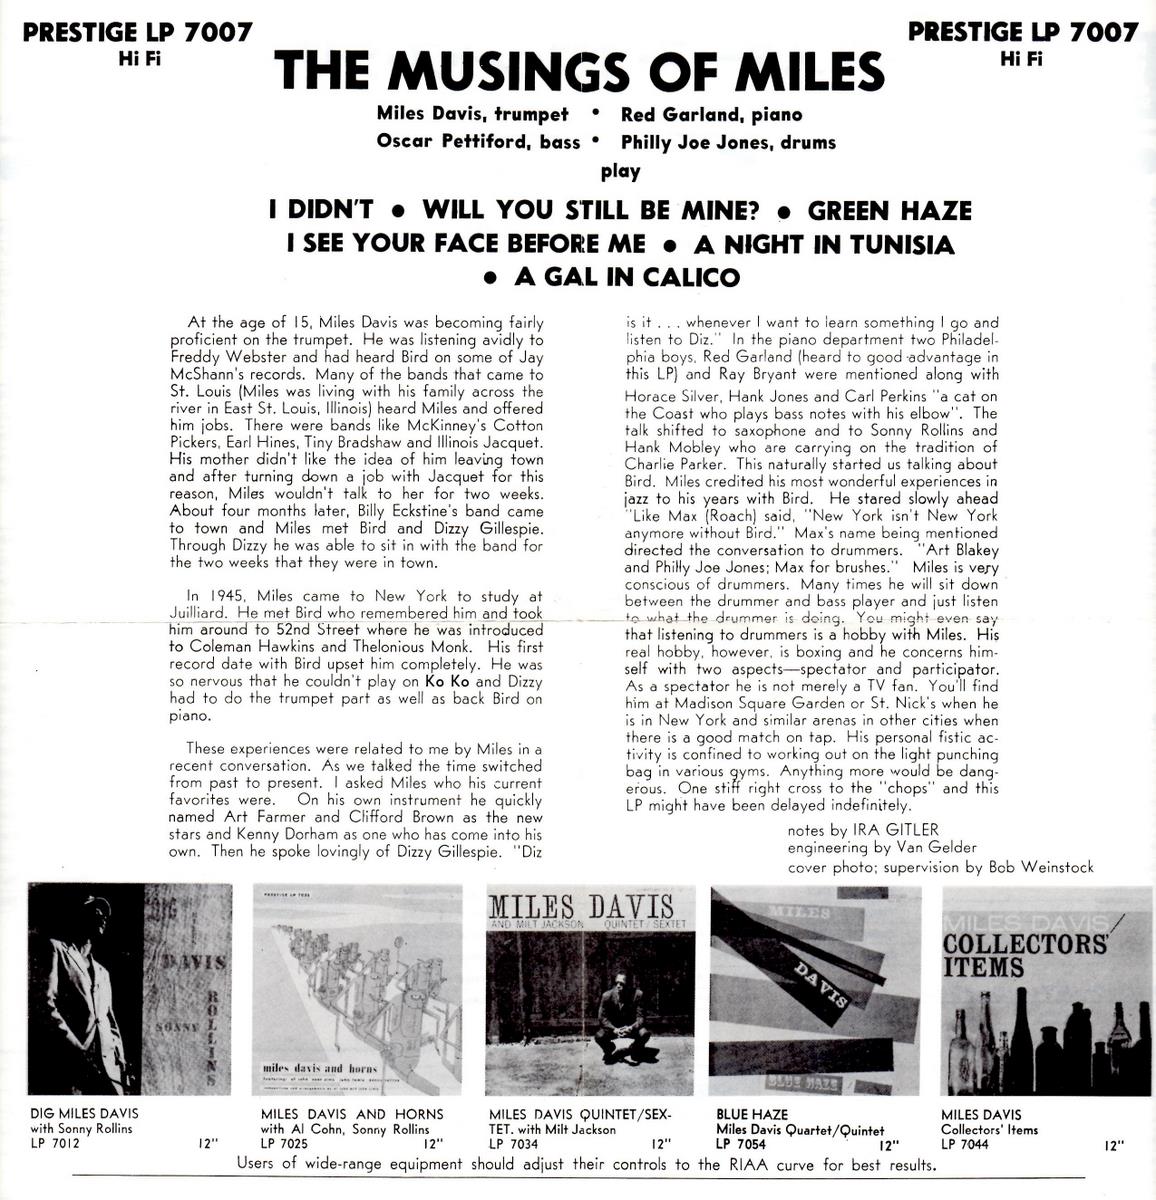 Musings of Miles (PRLP 7007)